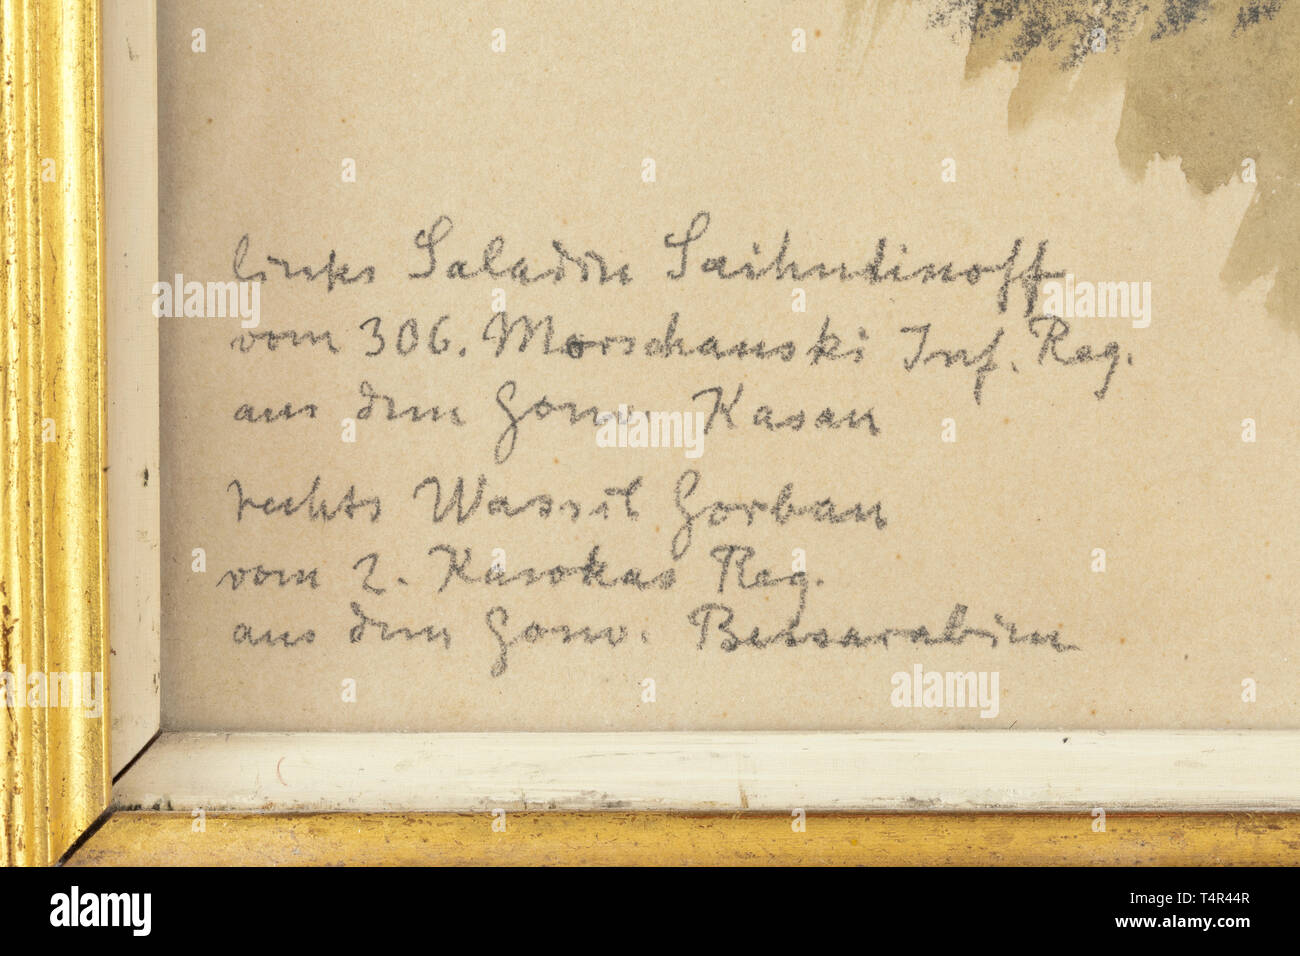 Ernst Liebermann (1869 - 1960) - Zwei russische Gefangene, die miteinander sprechen, Kohle und Aquarell auf Papier. Signiert und auf der rechten unteren "Ernst Liebermann 1916" datiert, eingeschrieben auf der linken unteren - (TR)." Auf der linken Saladin Saihudinov der 306 Mokshansky inf reg. Aus der reg. Kazan, auf der rechten Wassil. Caucas Gorban der 2.reg. Aus der reg. Bessarabien'. In einem alten vergoldeten Holzrahmen. Abmessungen der Rahmen 57 x 46,5 cm. Ernst Liebermann, berühmte Deutsche Maler, Grafiker und Illustrator, an der Berliner Akademie, 1890/93 - Additional-Rights Clearance-Info - Not-Available studierte Stockfoto